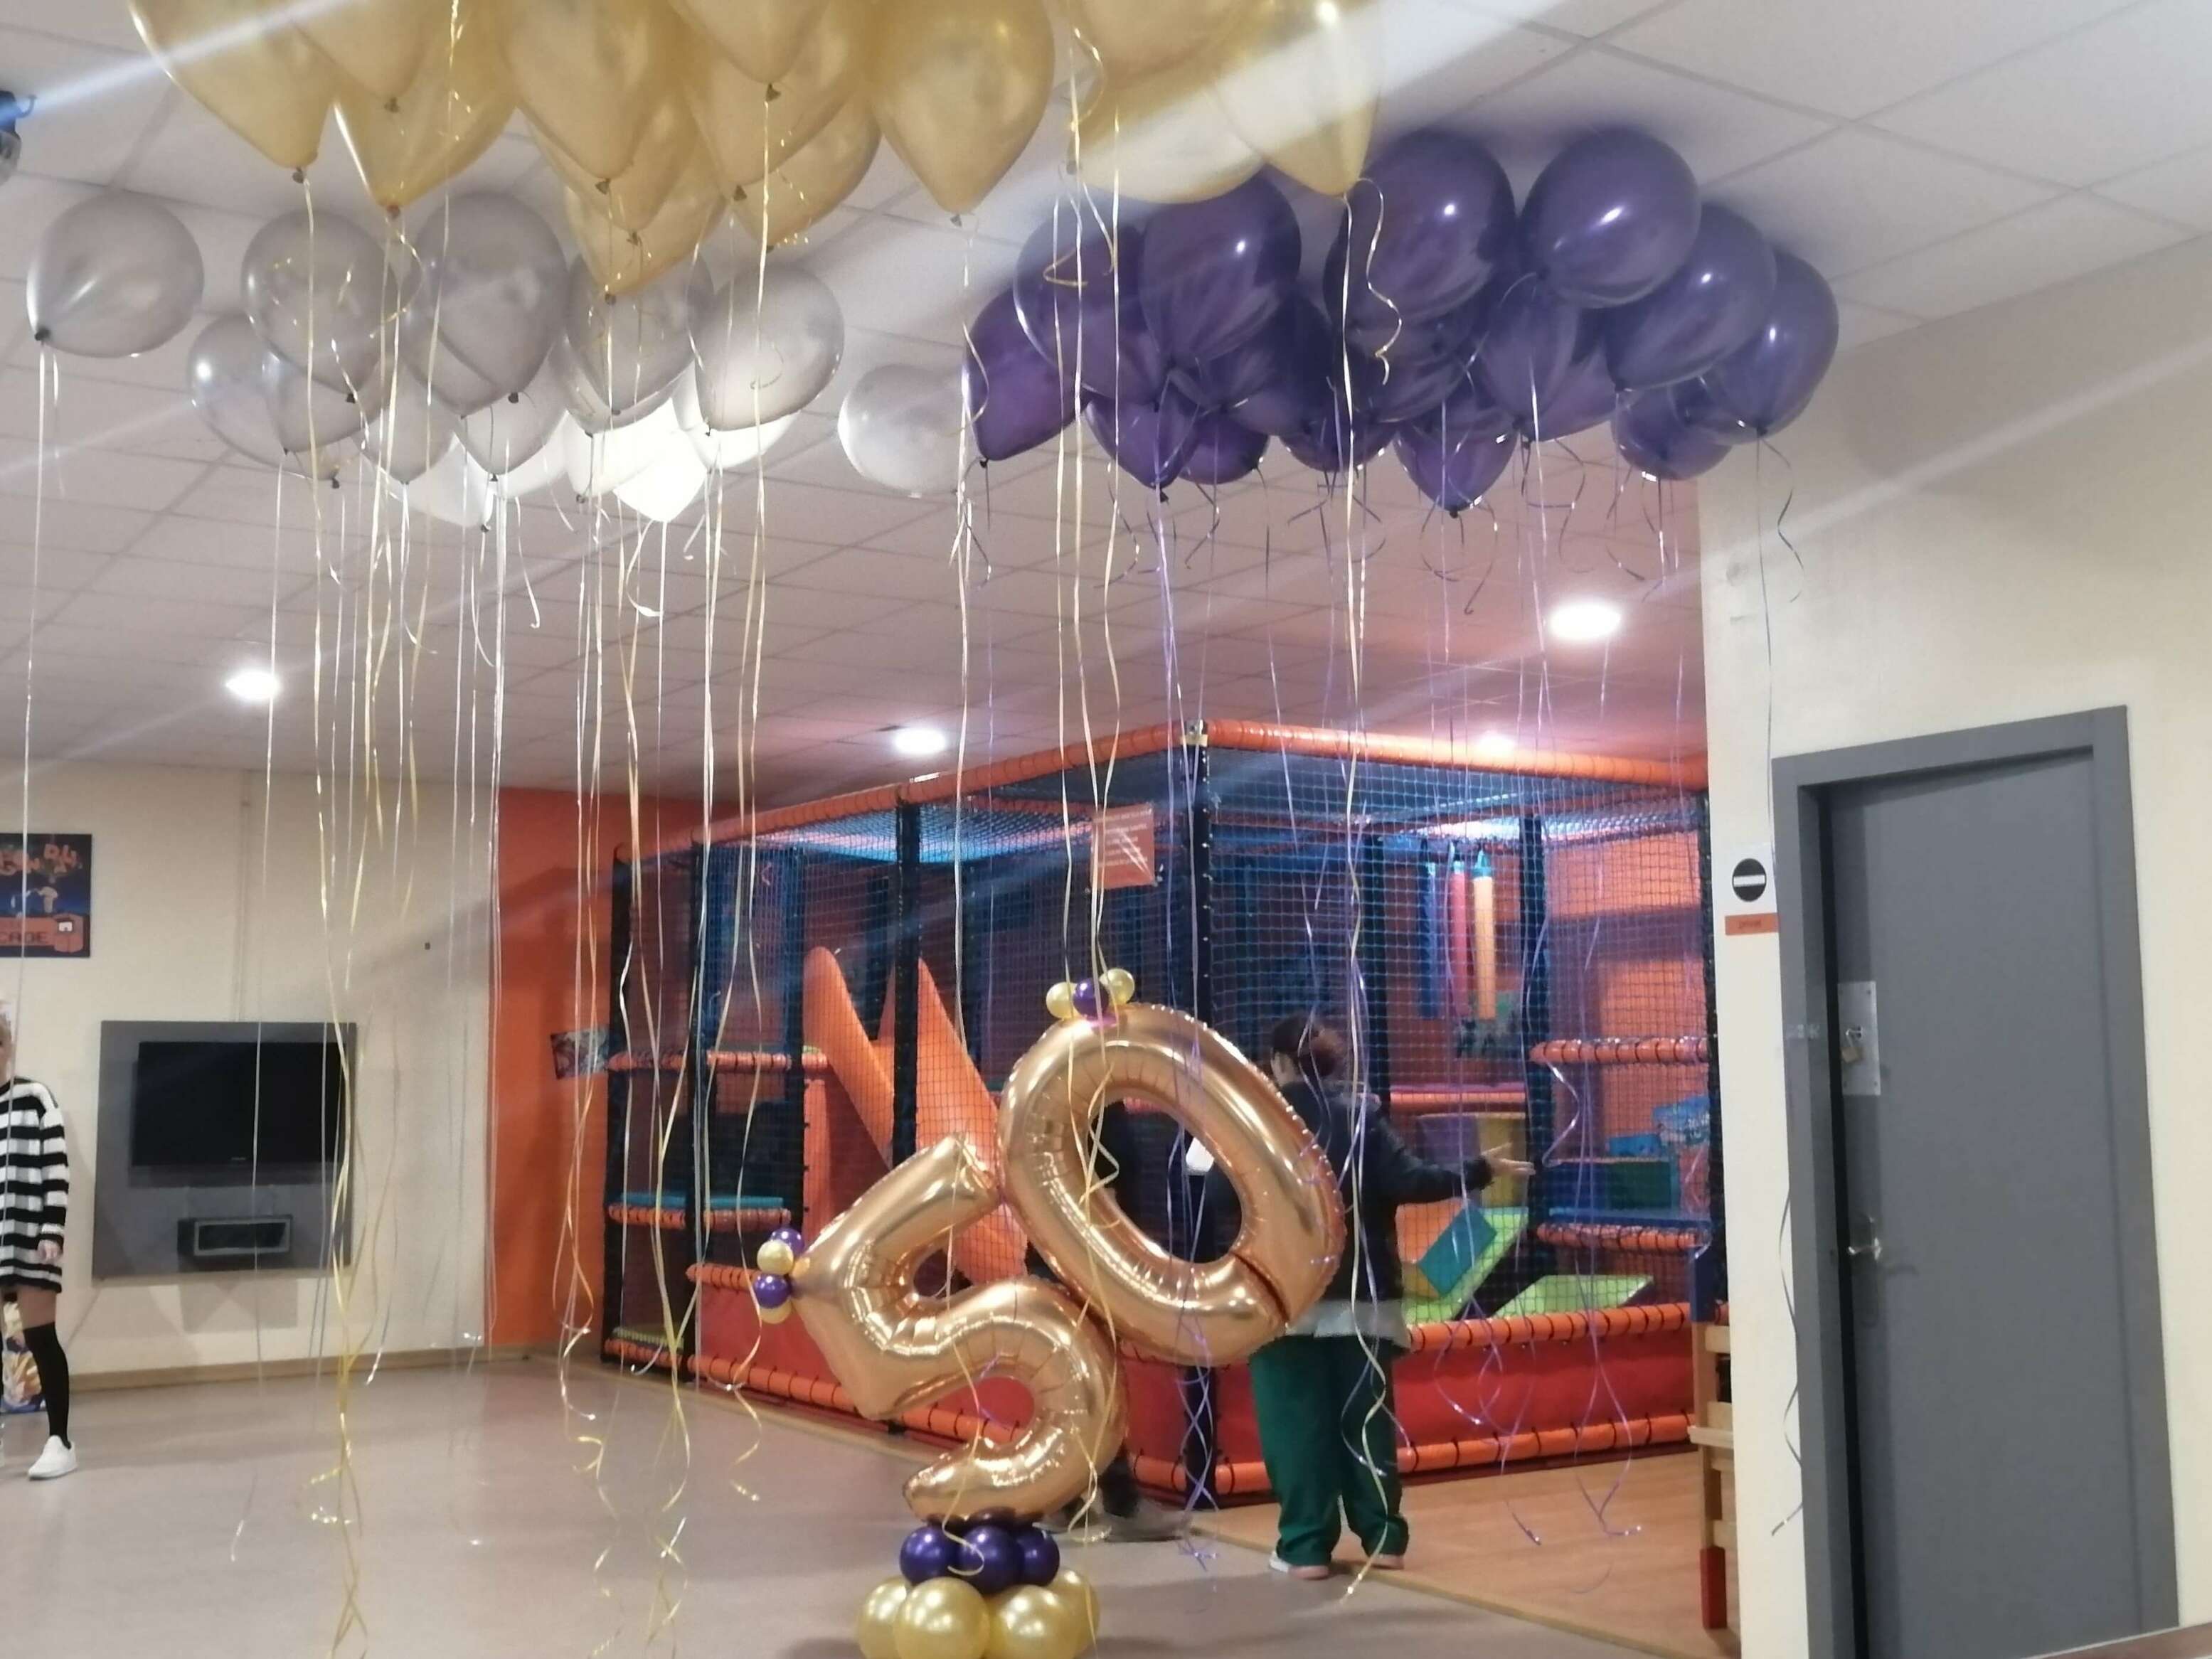 Una decoracion de globos para 50 años original  Fiesta de cumpleaños de  los 50, Globos, Decoracion de cumpleaños